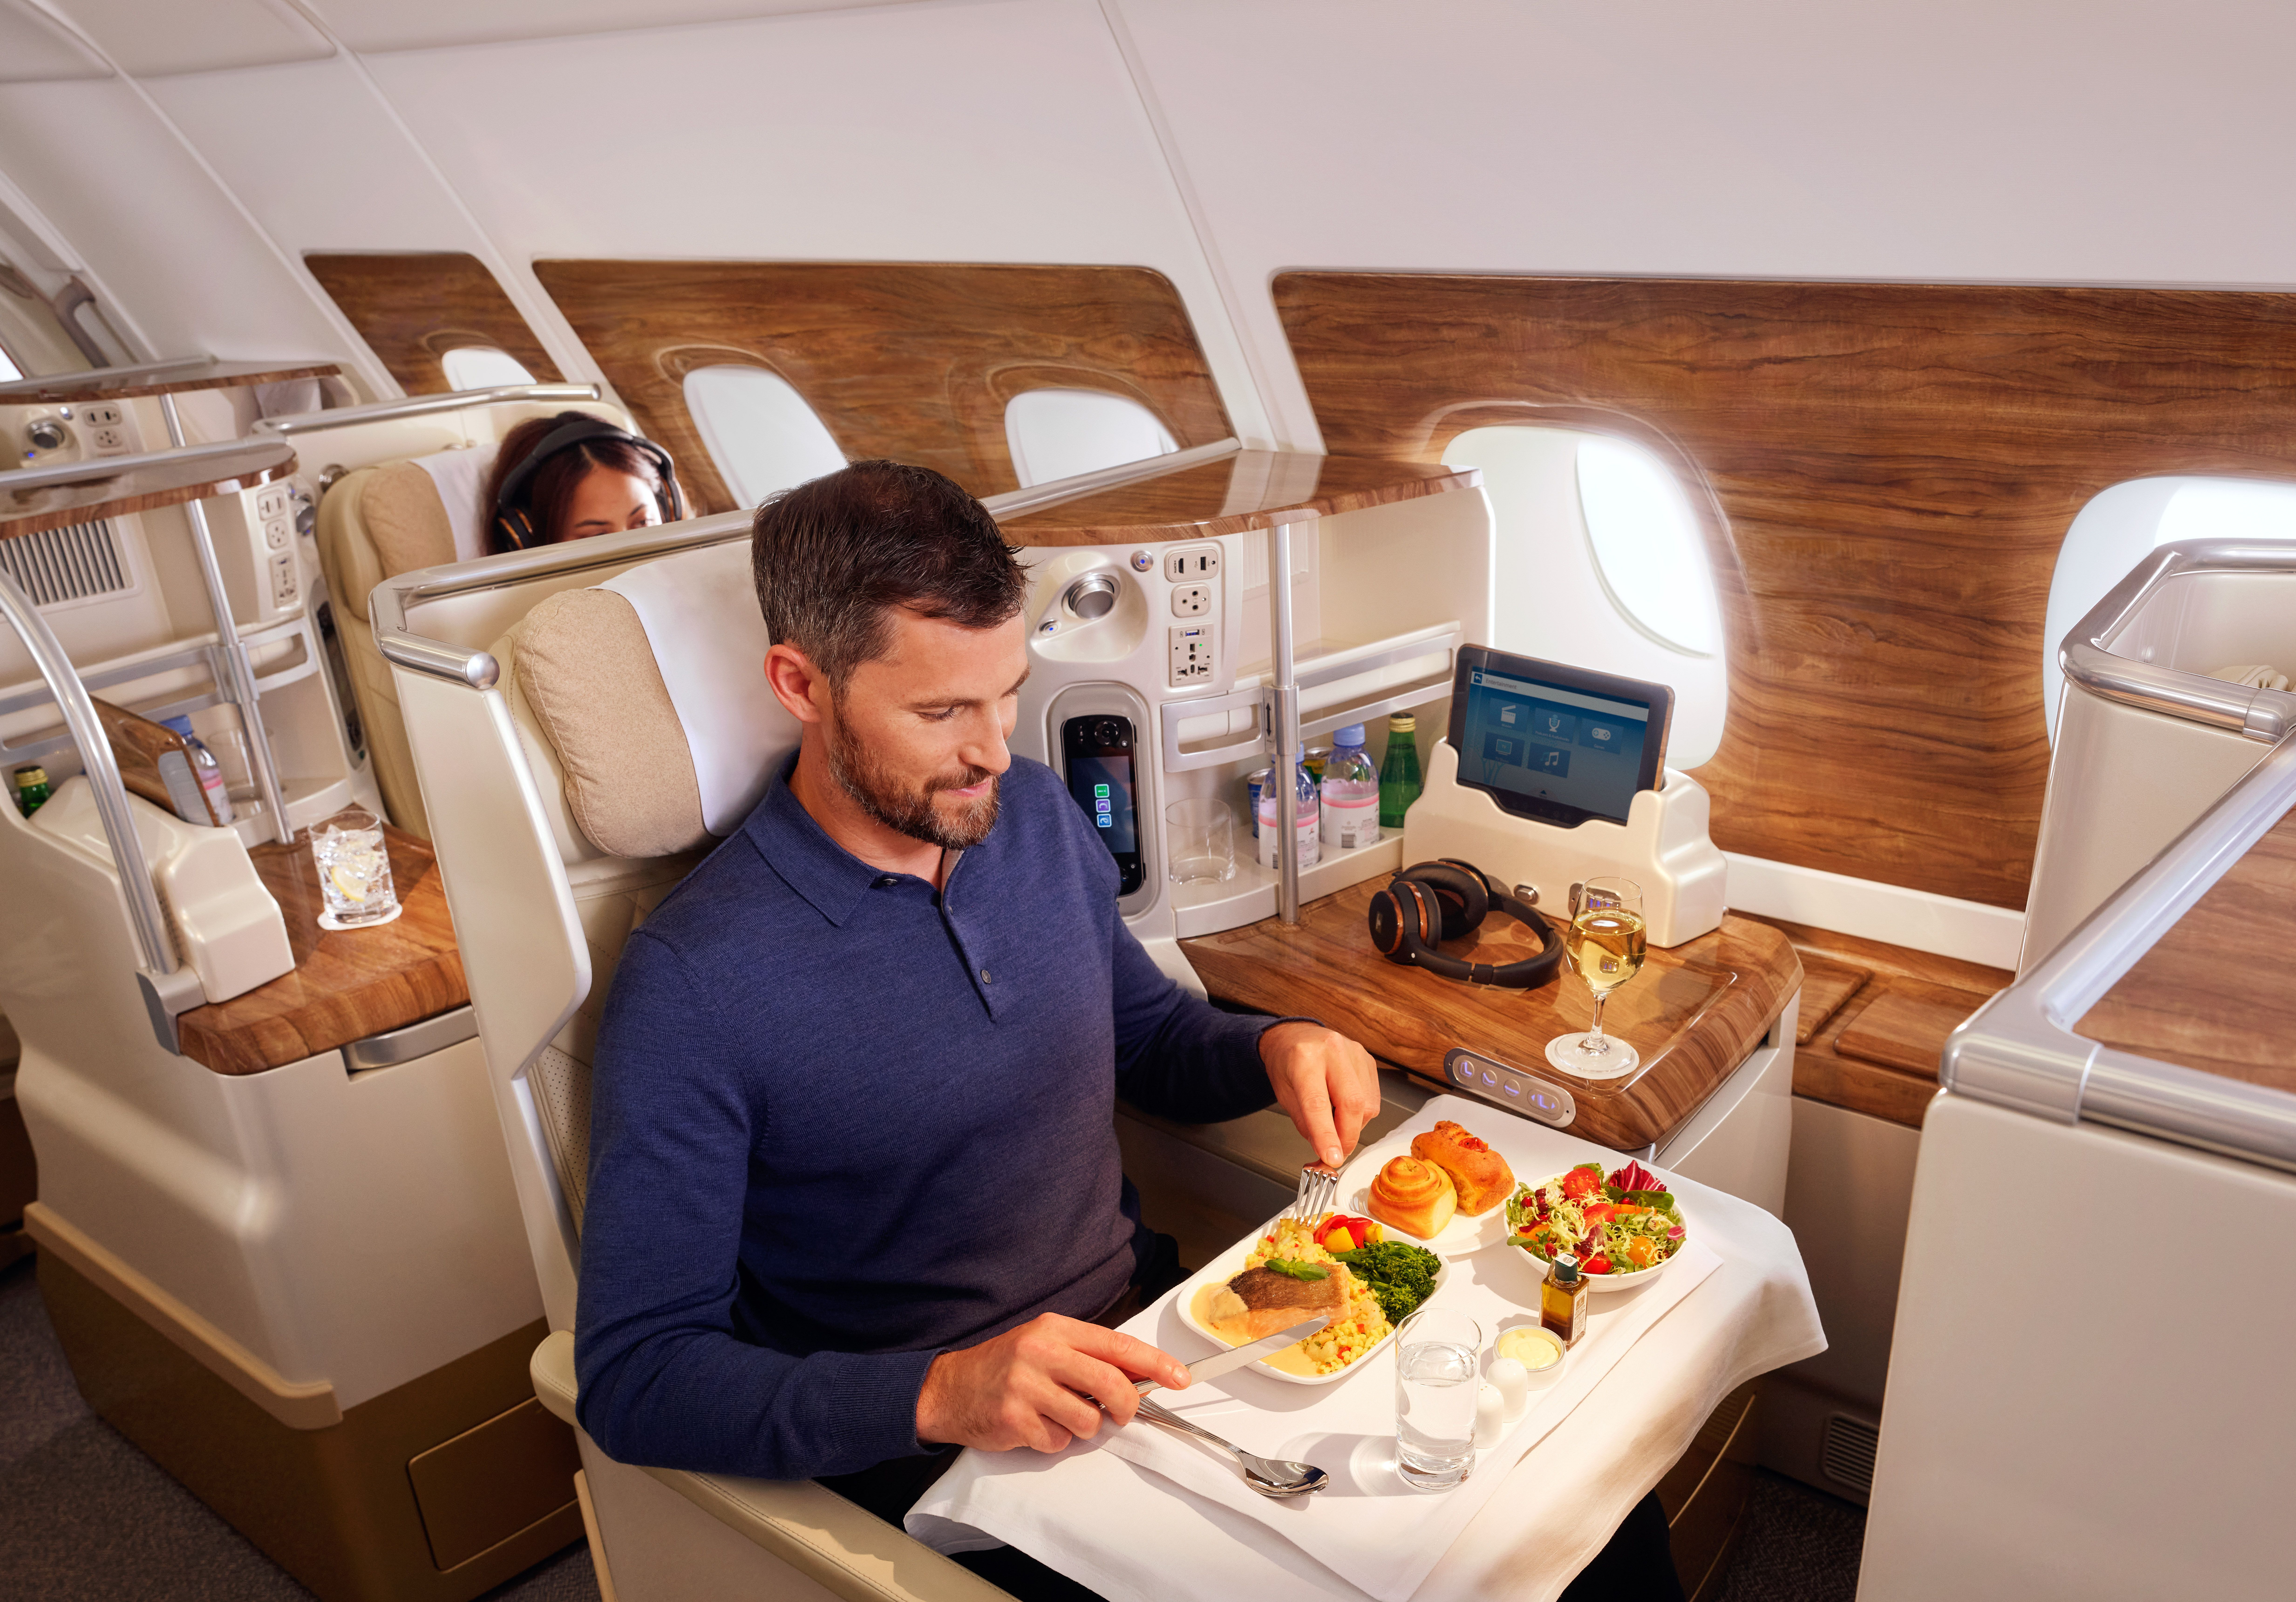 An Emirates business class passenger enjoying a meal.